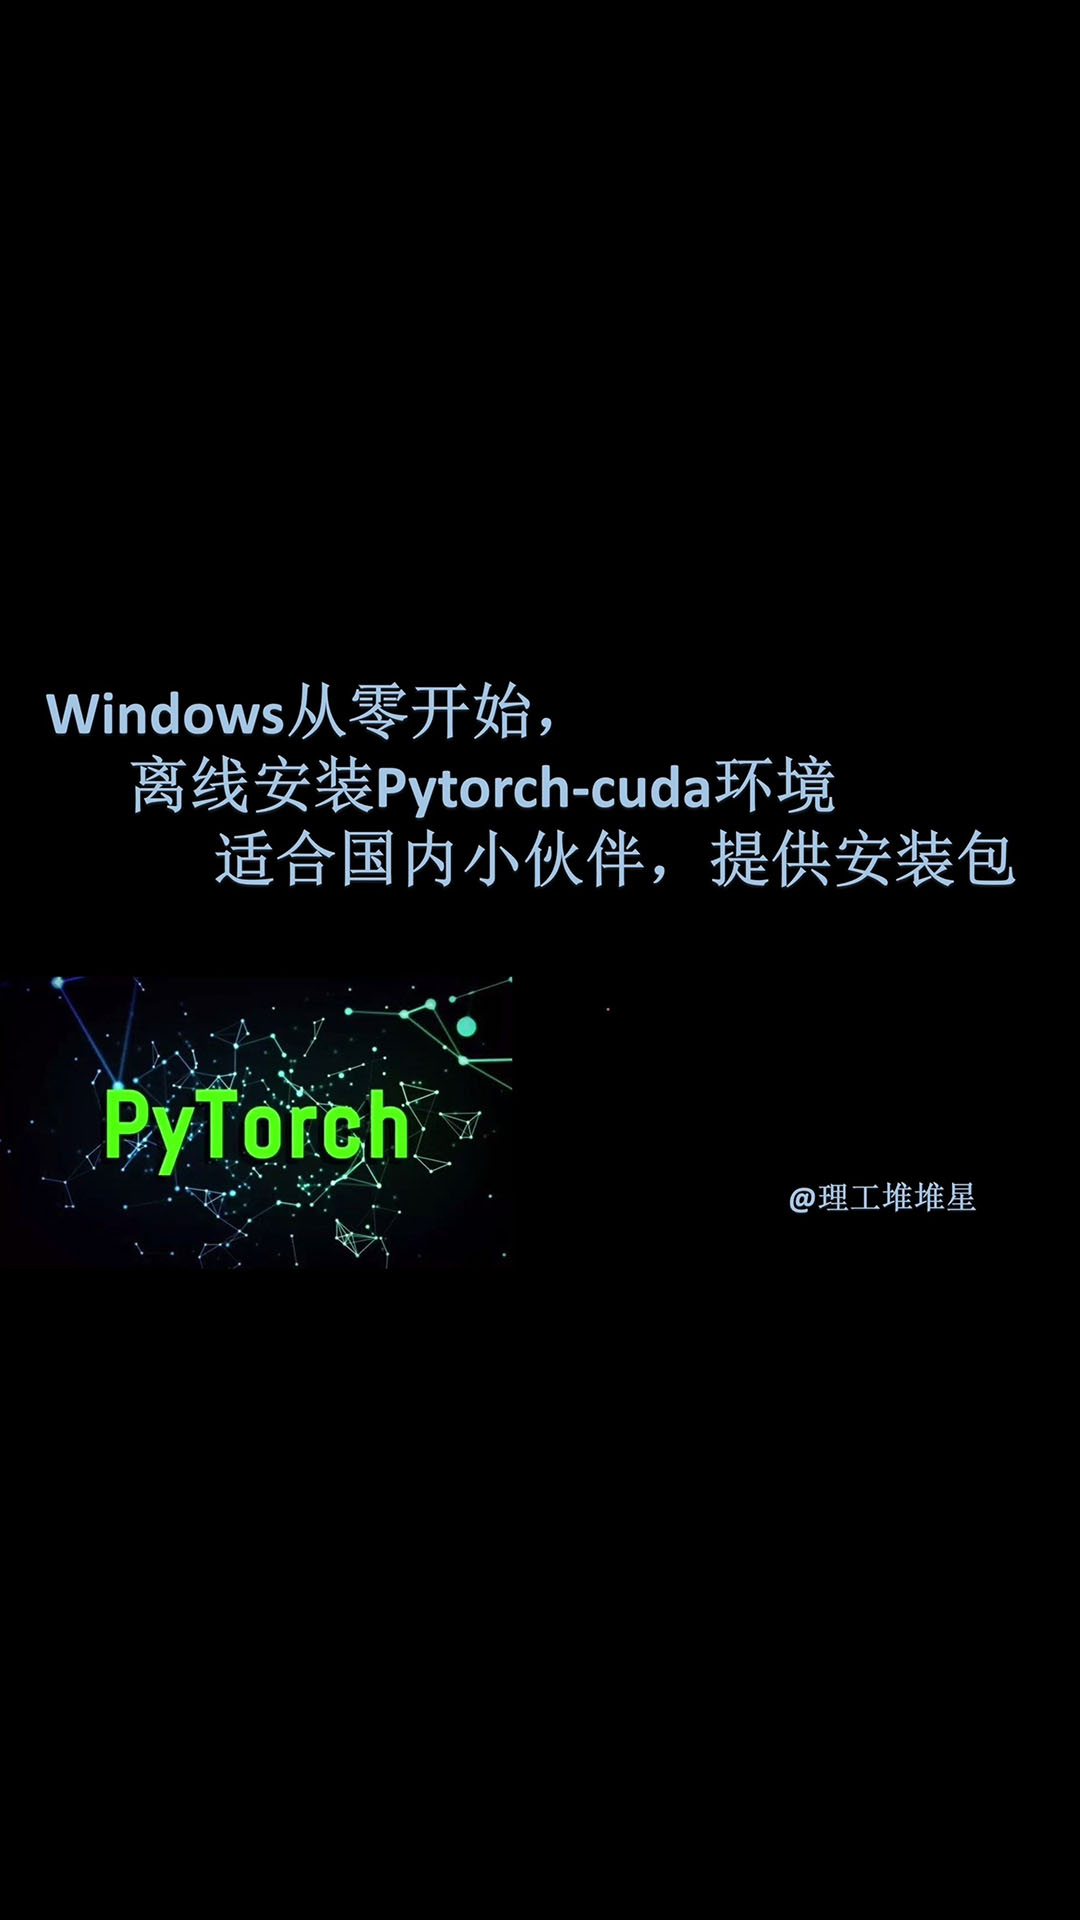 windows上从零开始，离线安装pytorch-cuda环境，提供所有安装包，建议收藏！